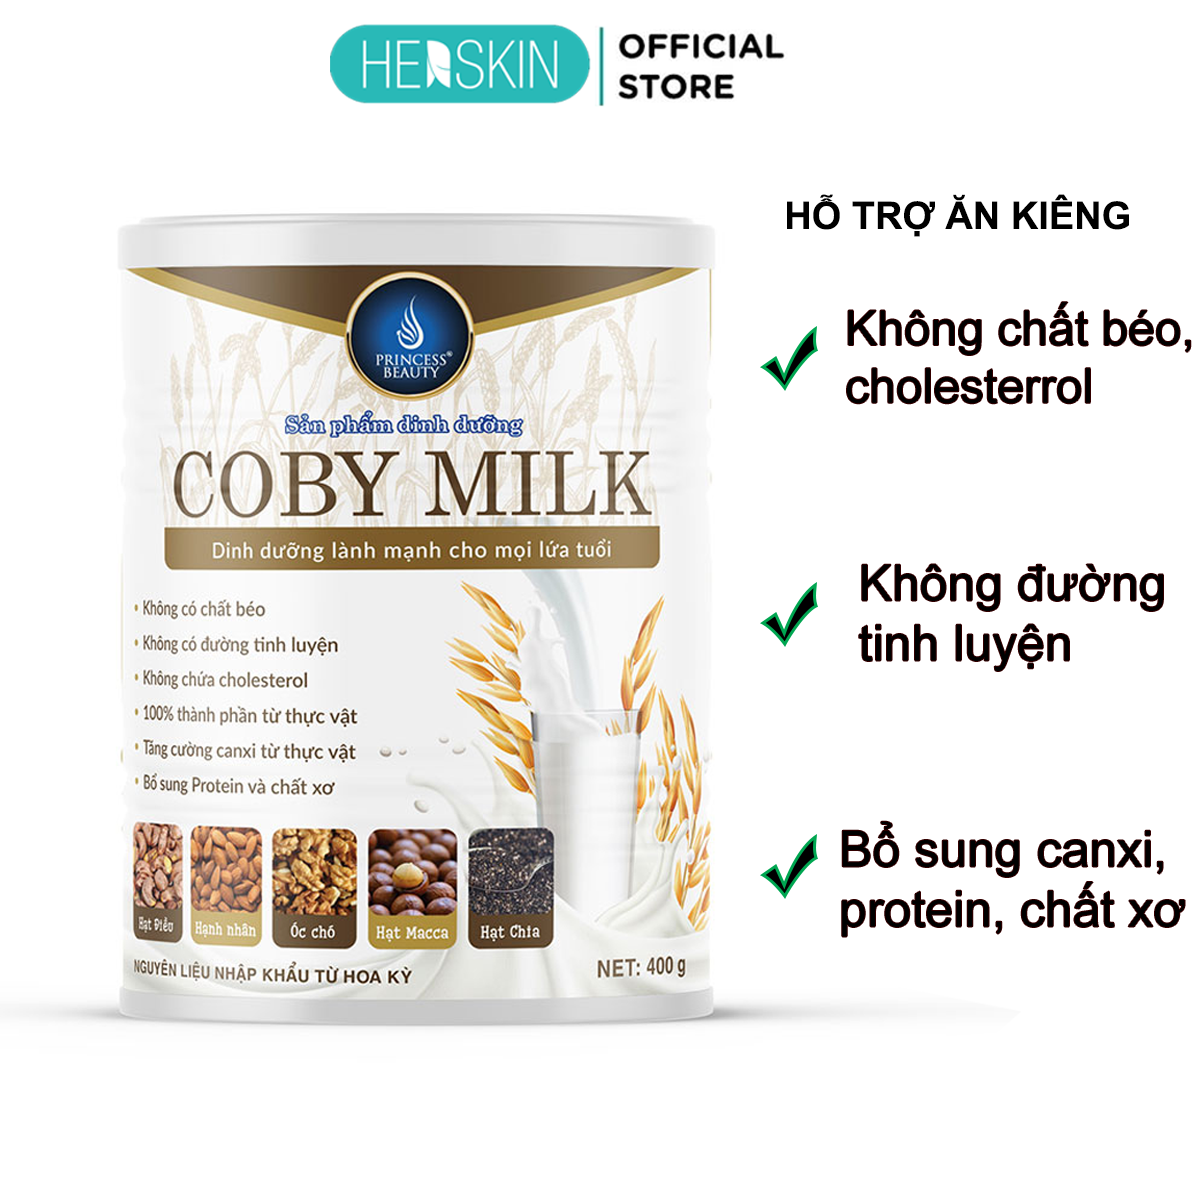 Sữa hạt dinh dưỡng Coby Milk Herskin 400g giàu chất xơ